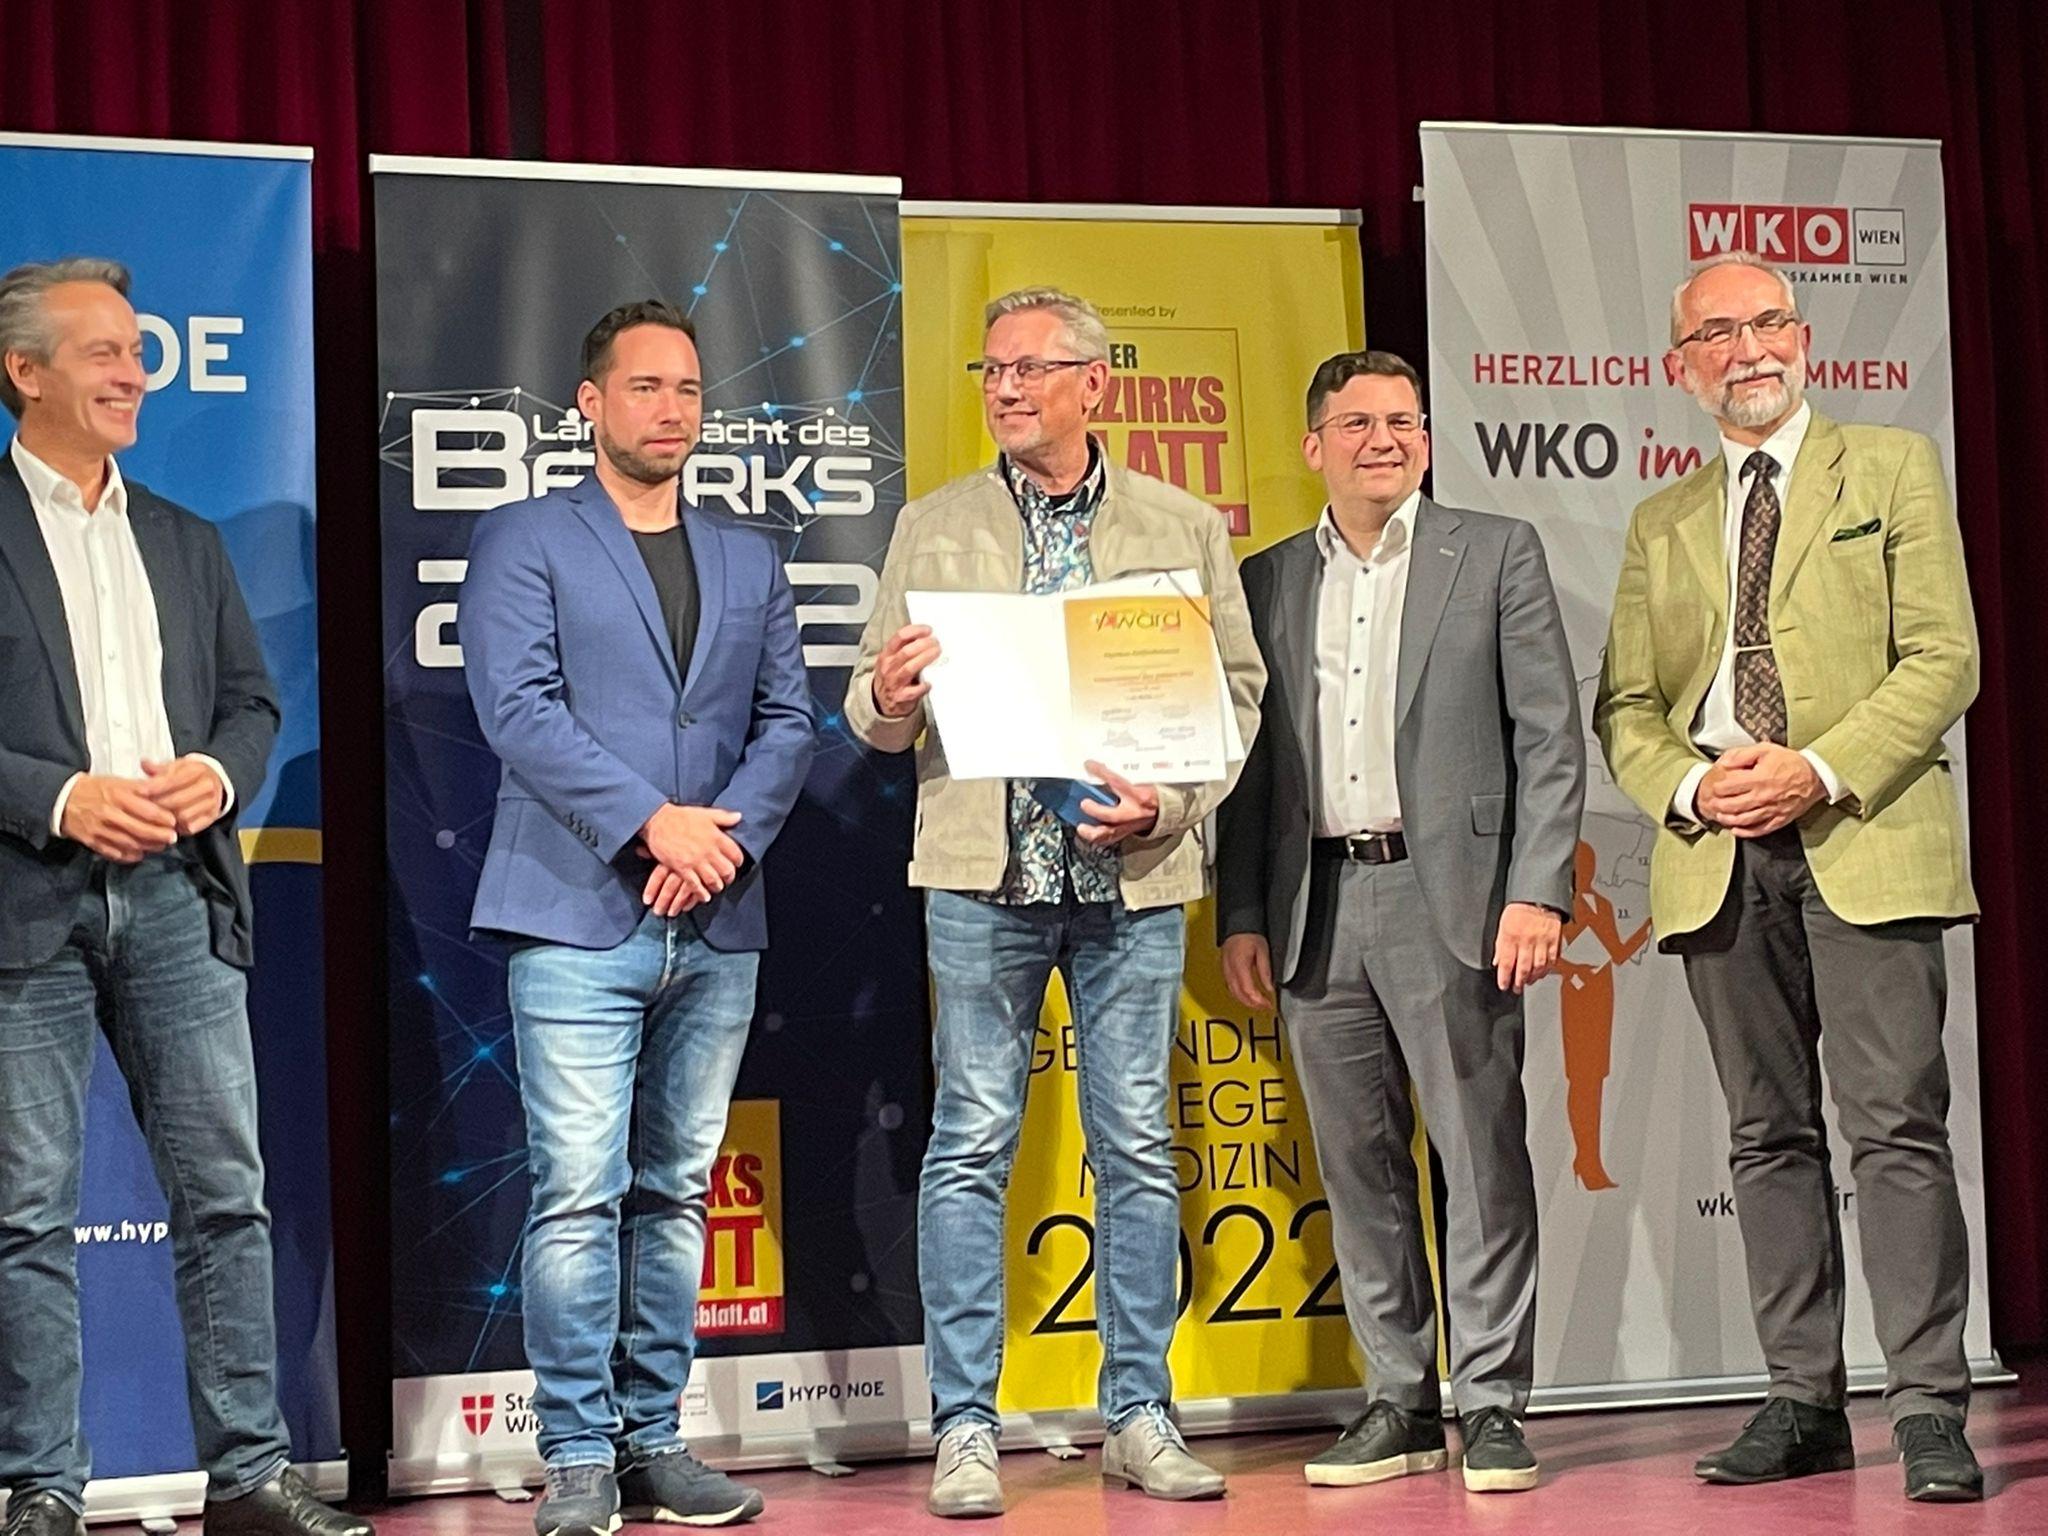 Bezirks Business Award 2022